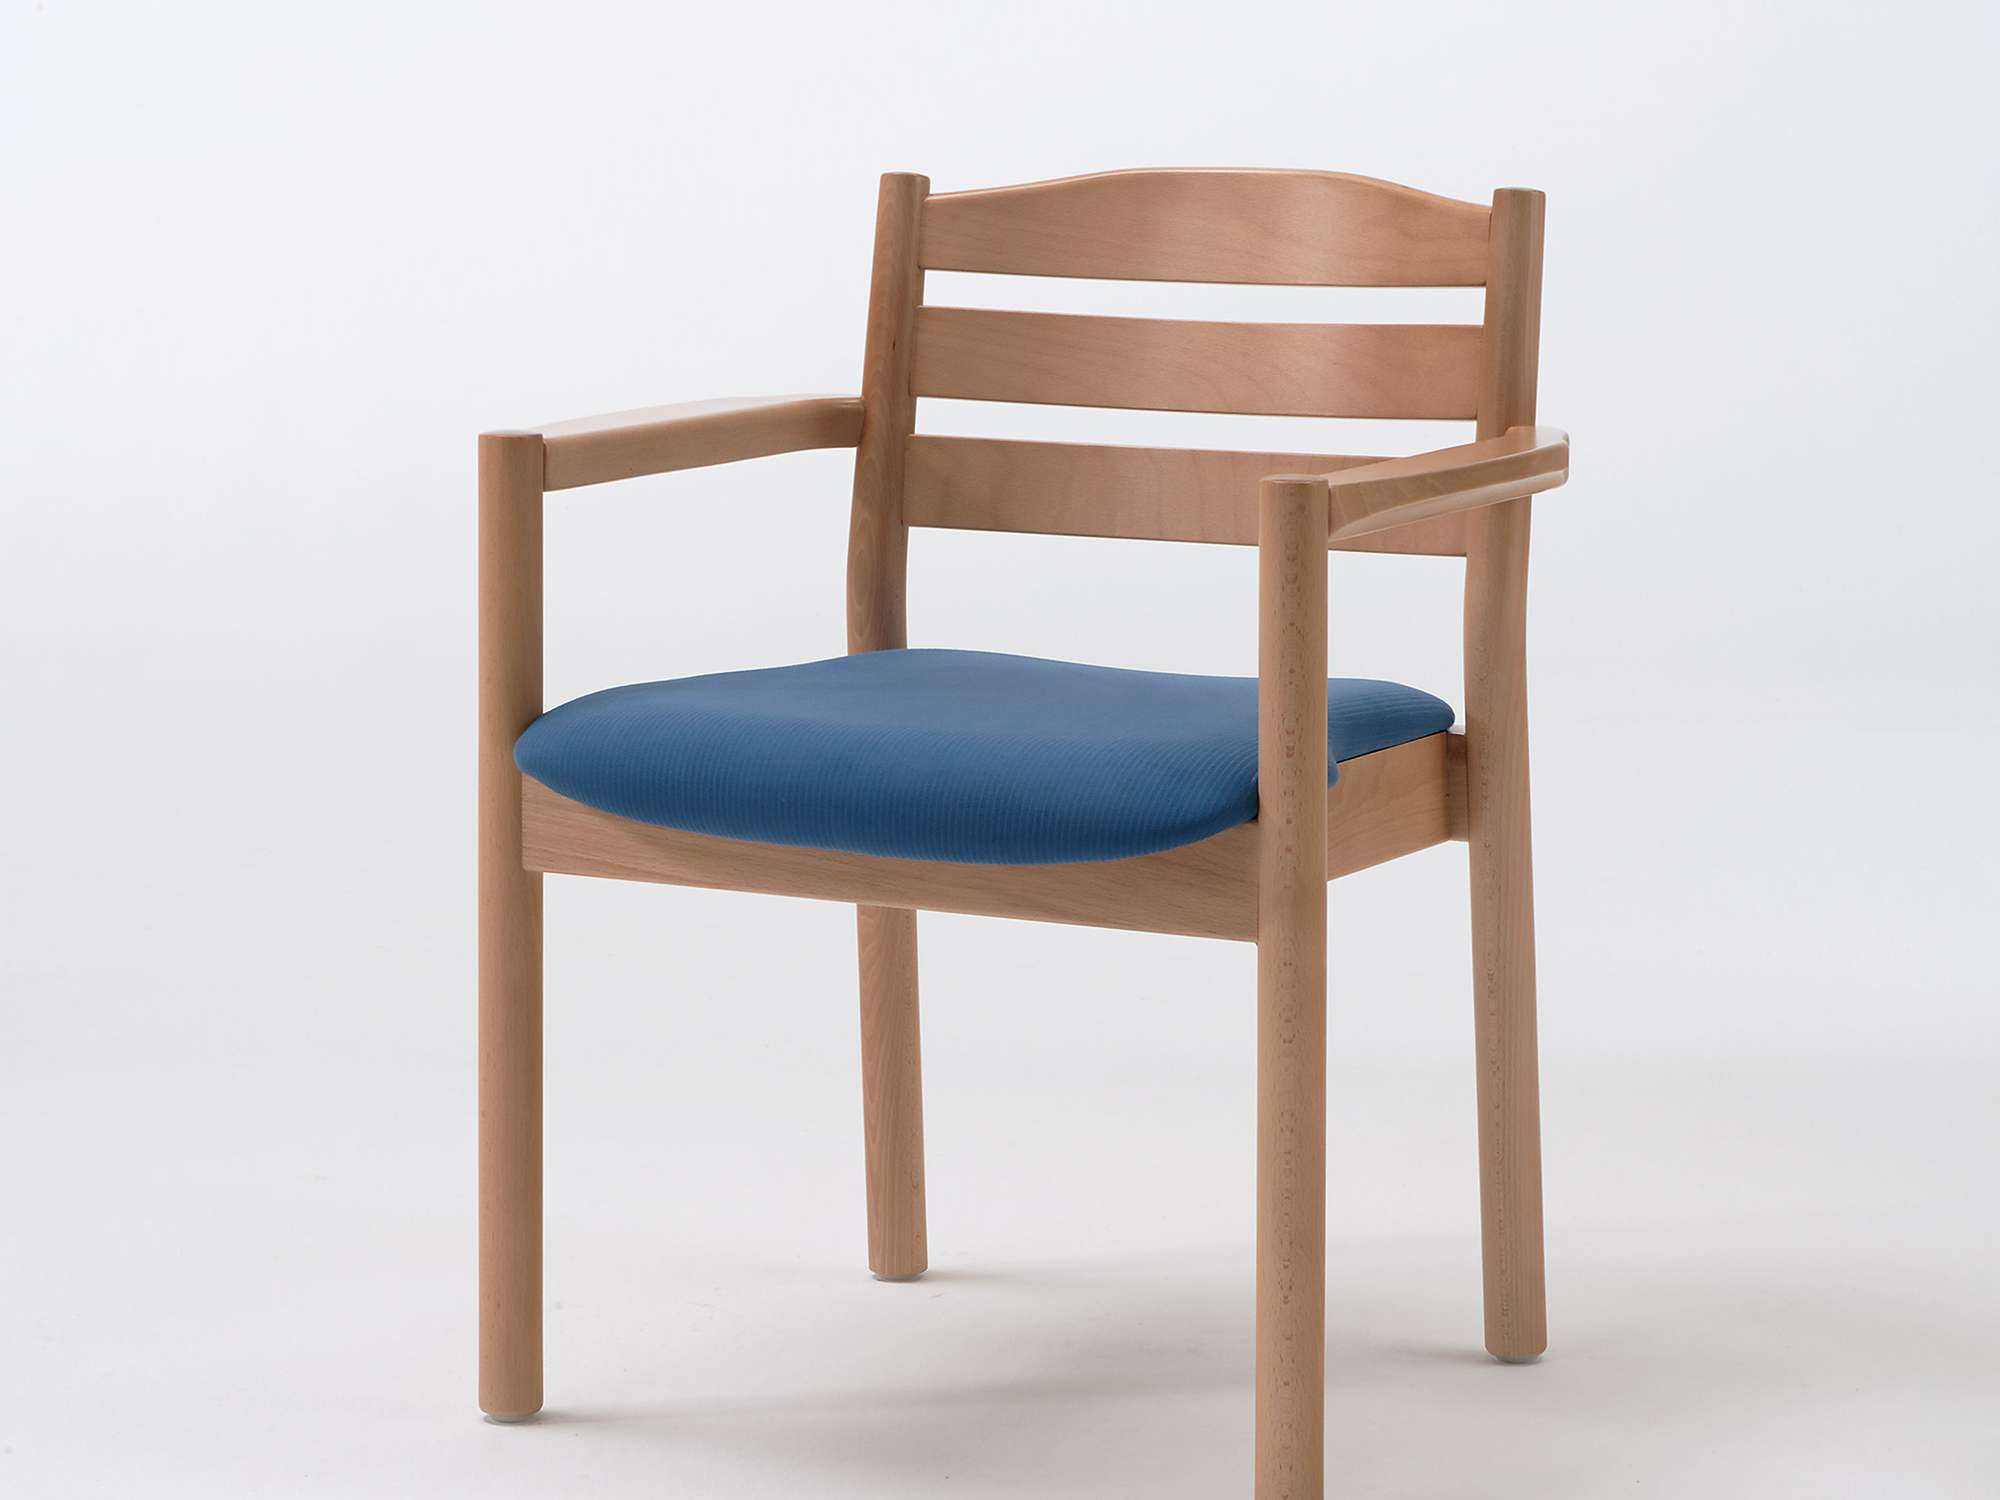 Primo-tuoli päällekkäin pinottavana, käsinojallisena mallina ilman pehmustettua selkänojaa